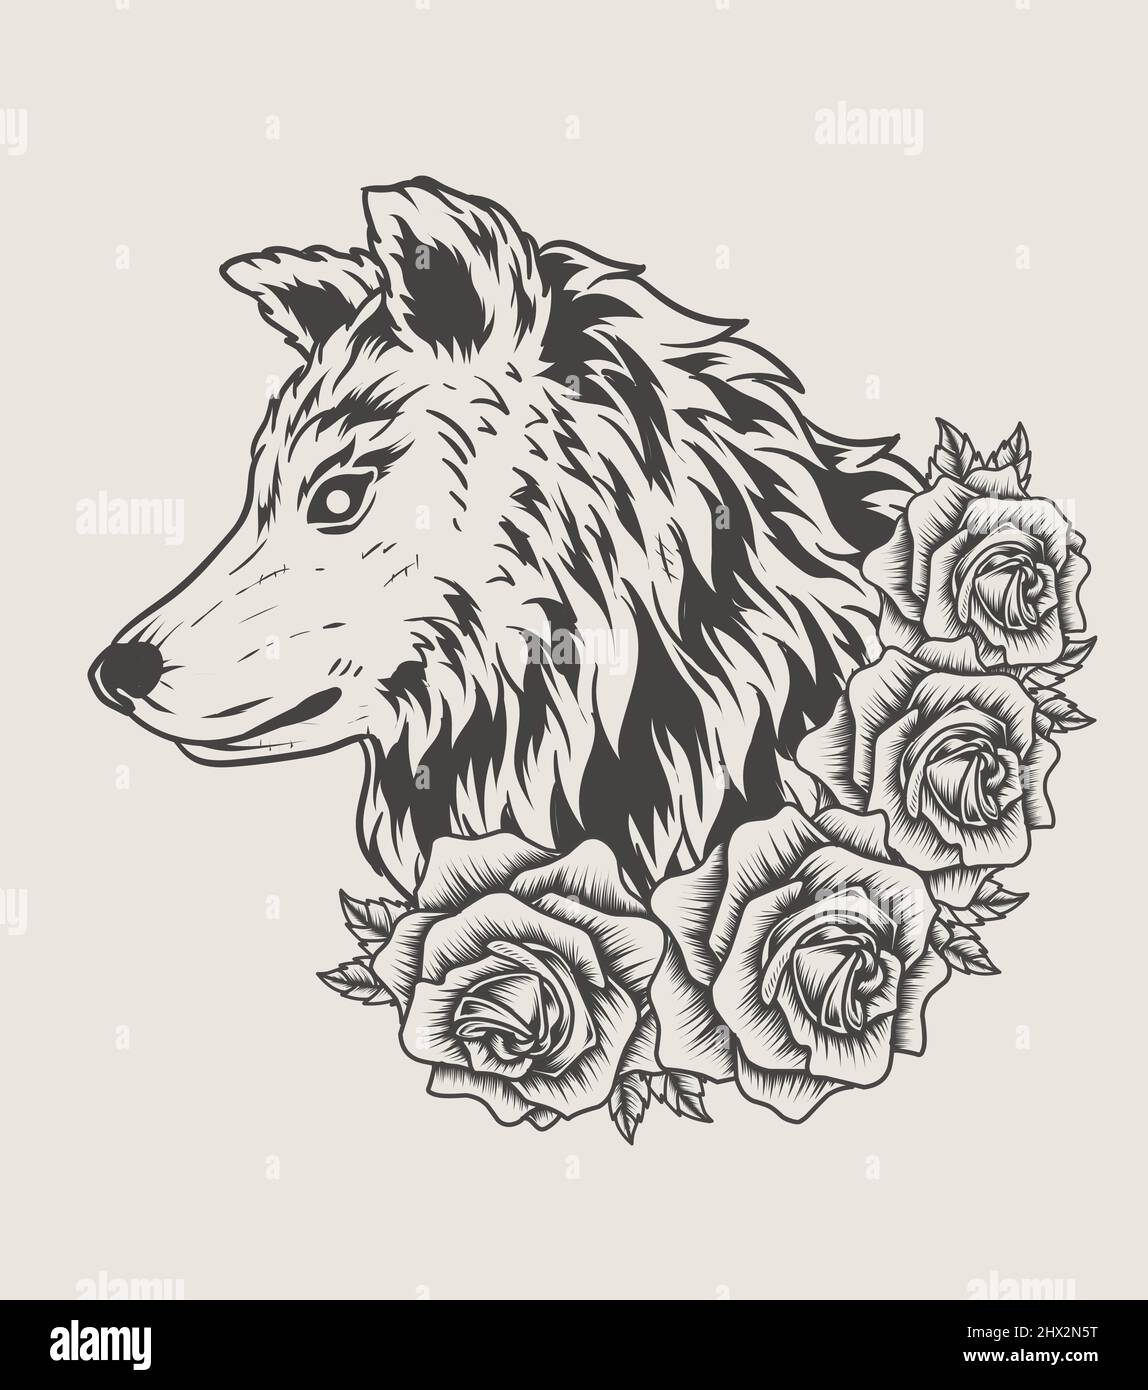 illustrazione testa lupo con fiore di rosa in stile monocromatico Immagine  e Vettoriale - Alamy